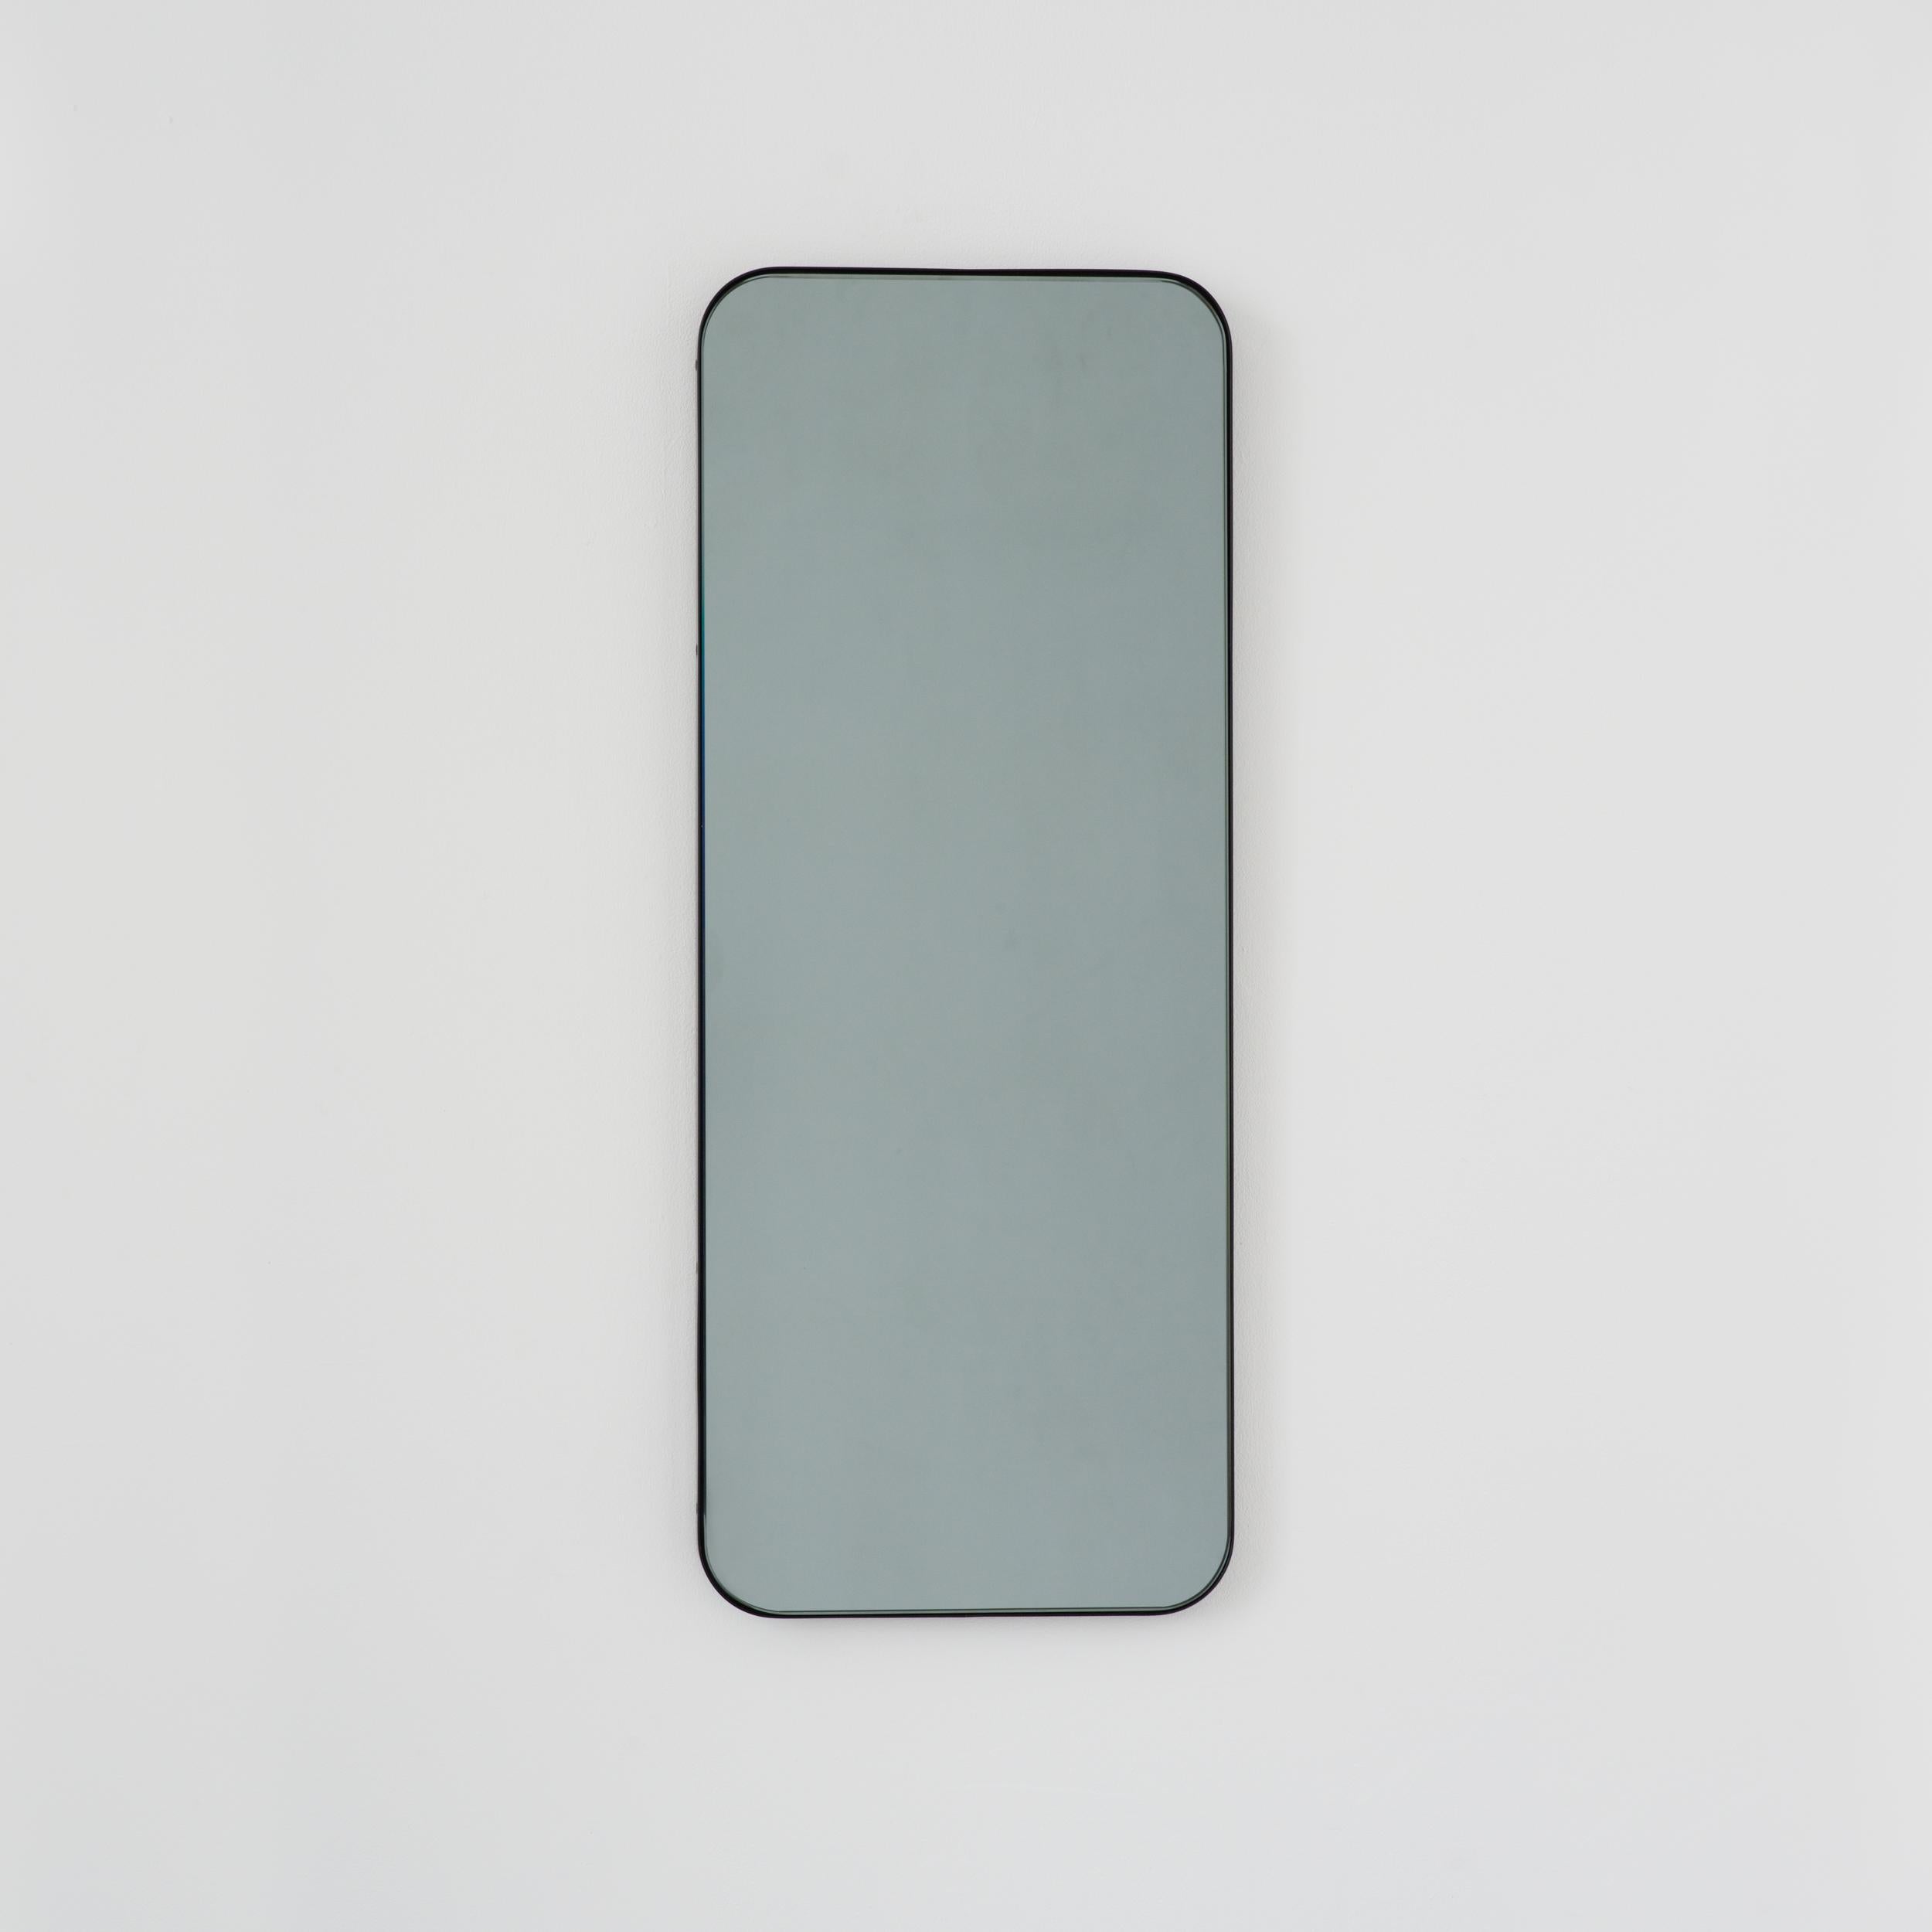 Zeitgenössischer schwarz getönter rechteckiger Spiegel mit elegantem schwarzem Rahmen. Teil der charmanten Quadris™ Kollektion, entworfen und handgefertigt in London, UK. 

Die Lieferung erfolgt mit einer speziellen Z-Stange für eine einfache